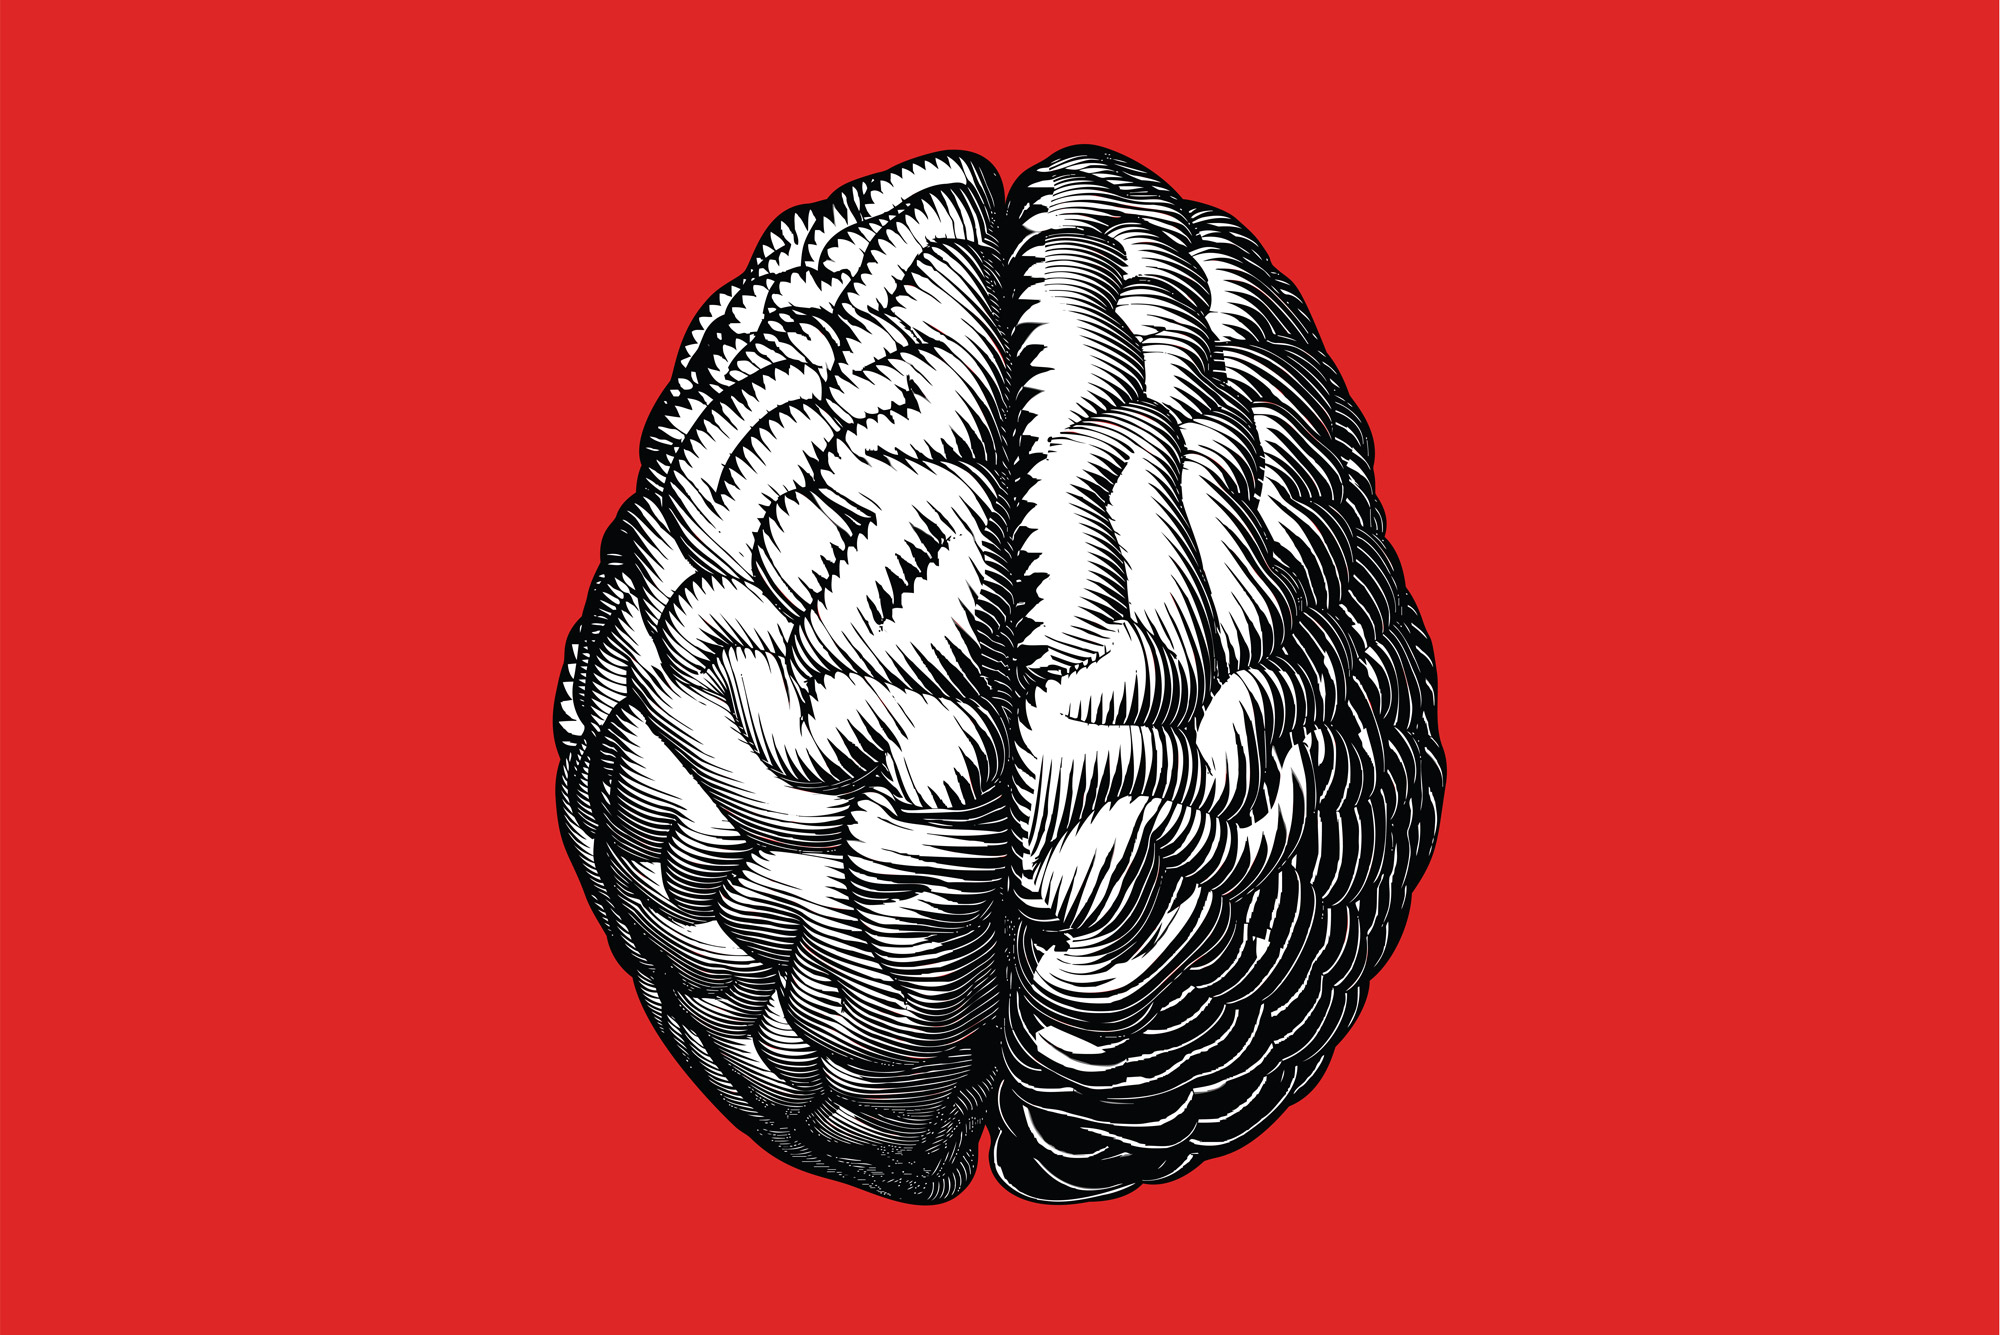 عکس مغز انسان با پس زمینه قرمز برای دانشجوهای متخصص مغز